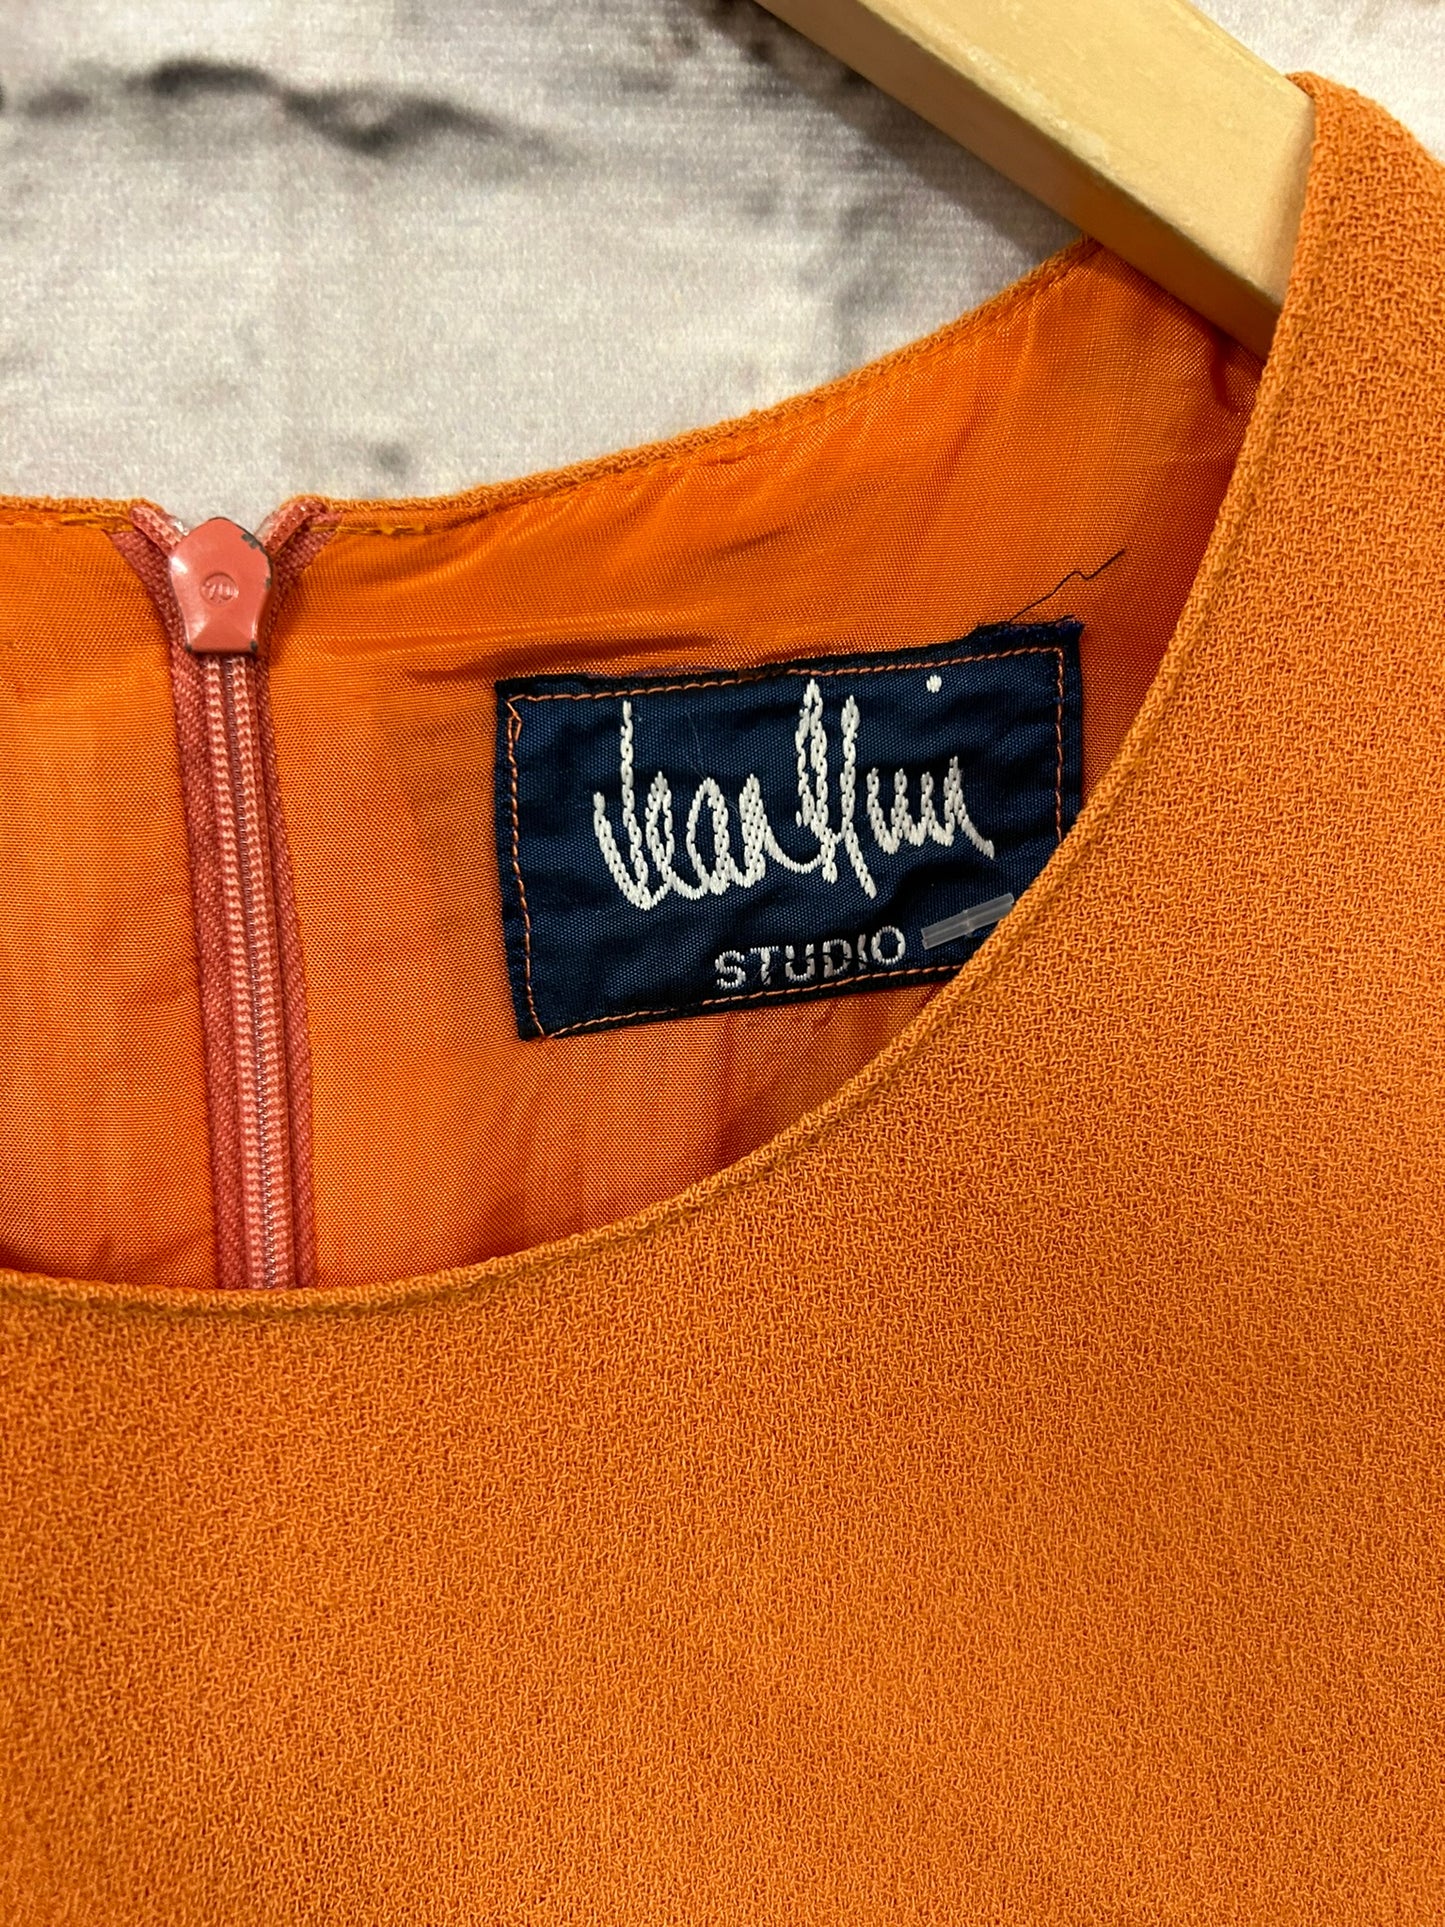 1960s Style Orange Shift Dress Size 8-10